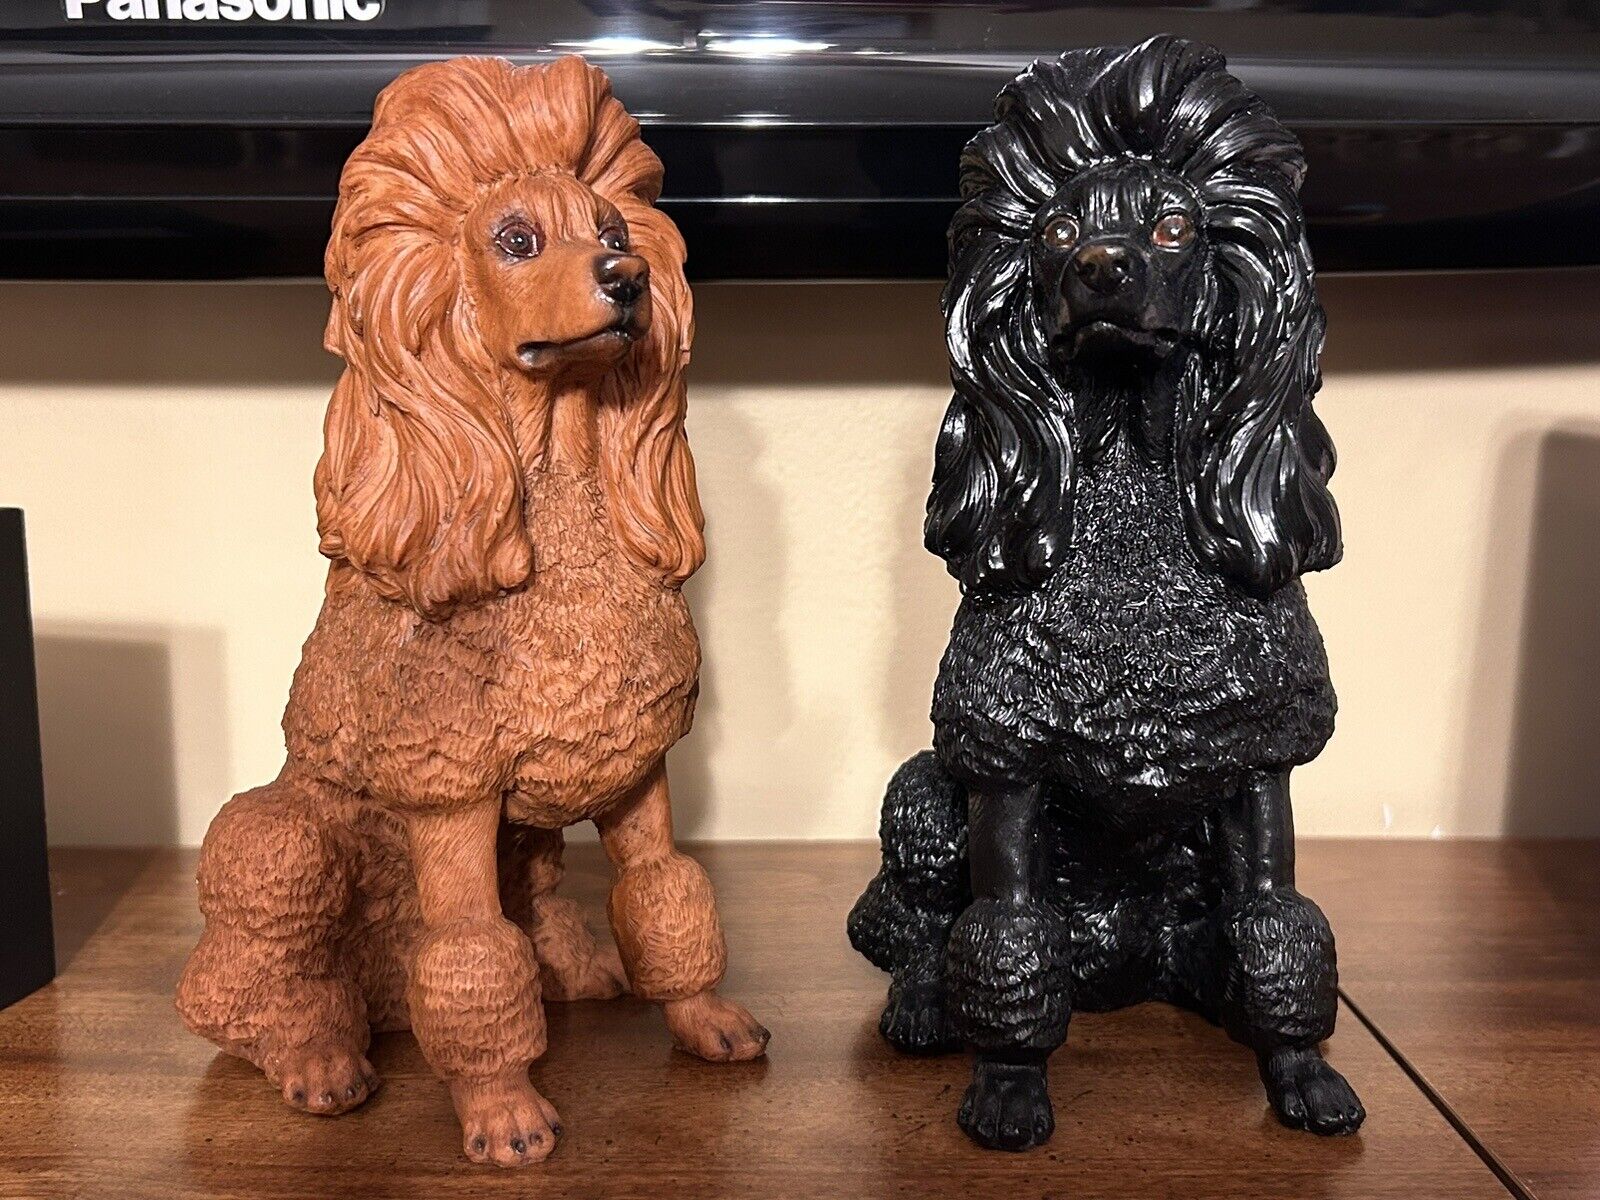 7.5” Resin Poodle Figurine/Statue